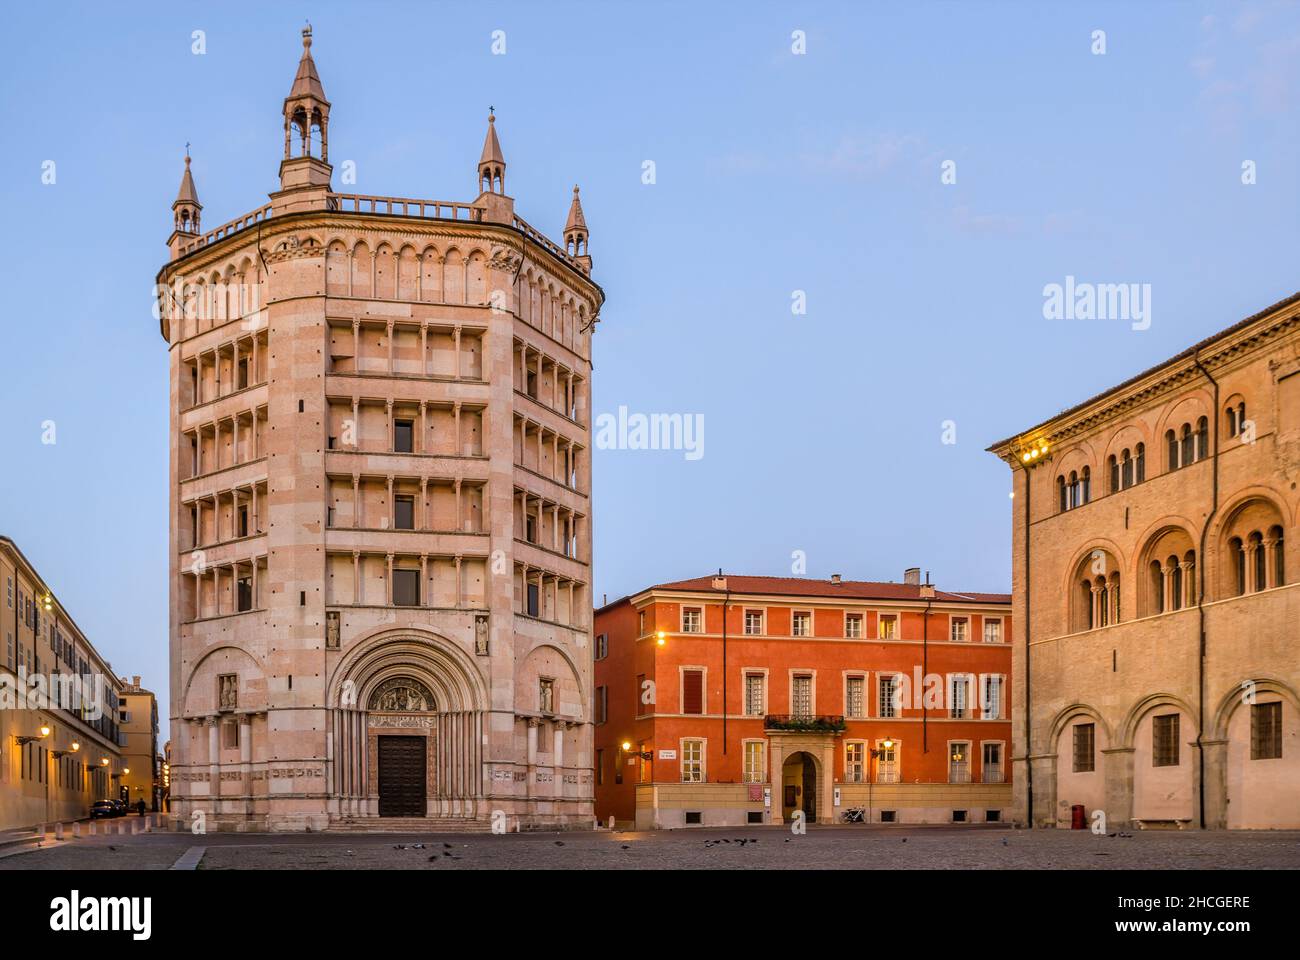 Piazza Duomo en el centro histórico de Parma, Emilia-Romagna, Italia, al amanecer. Foto de stock